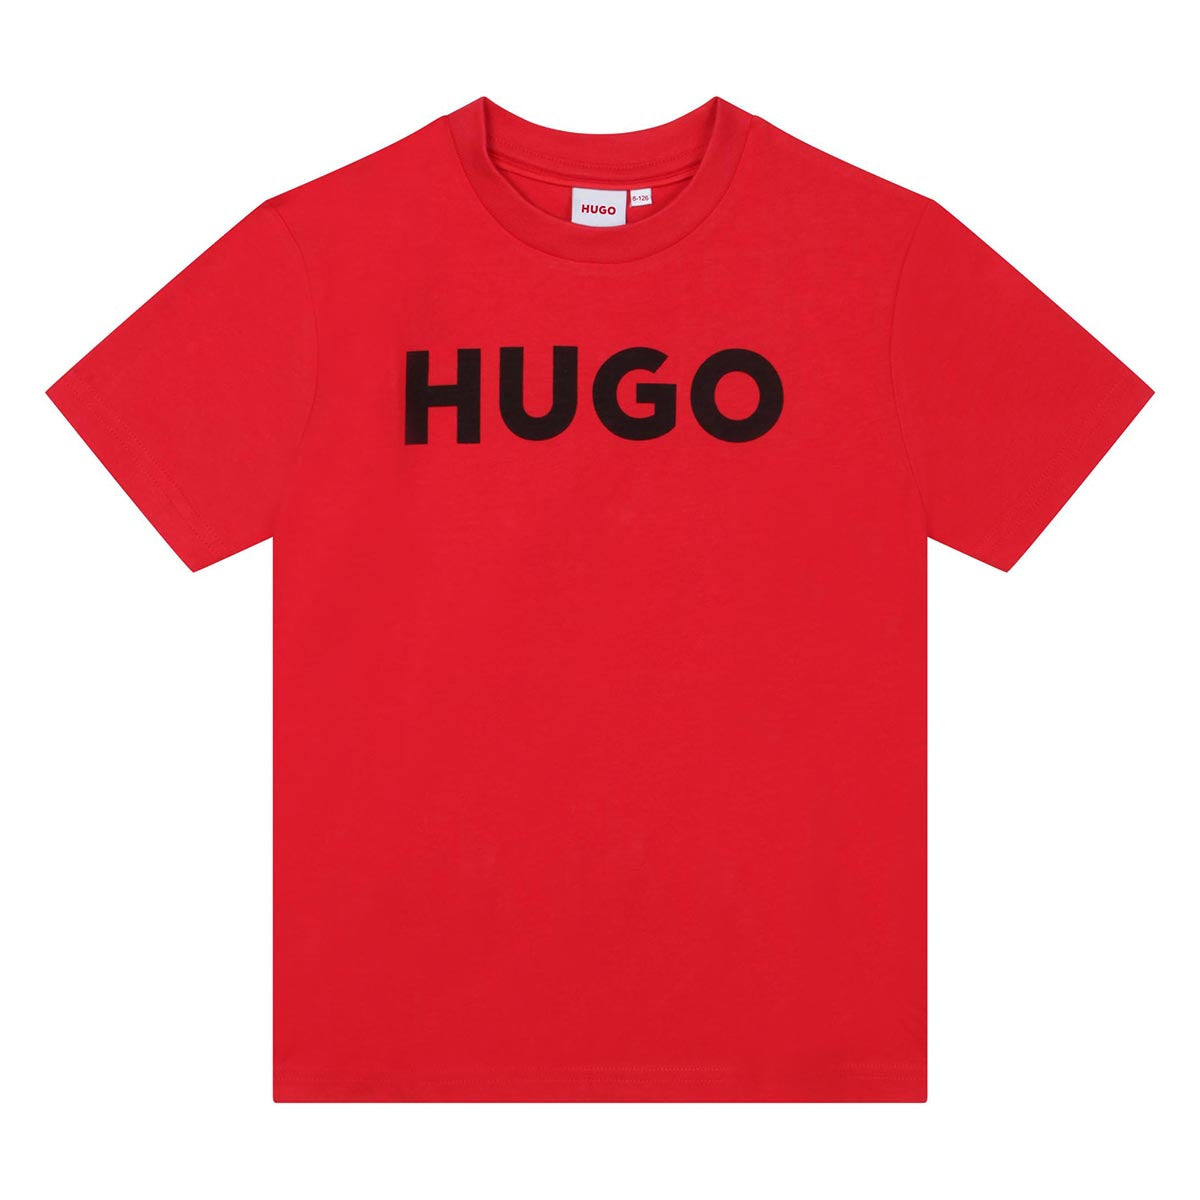 חולצת טי שרט HUGO לוגו מרכזי לילדים